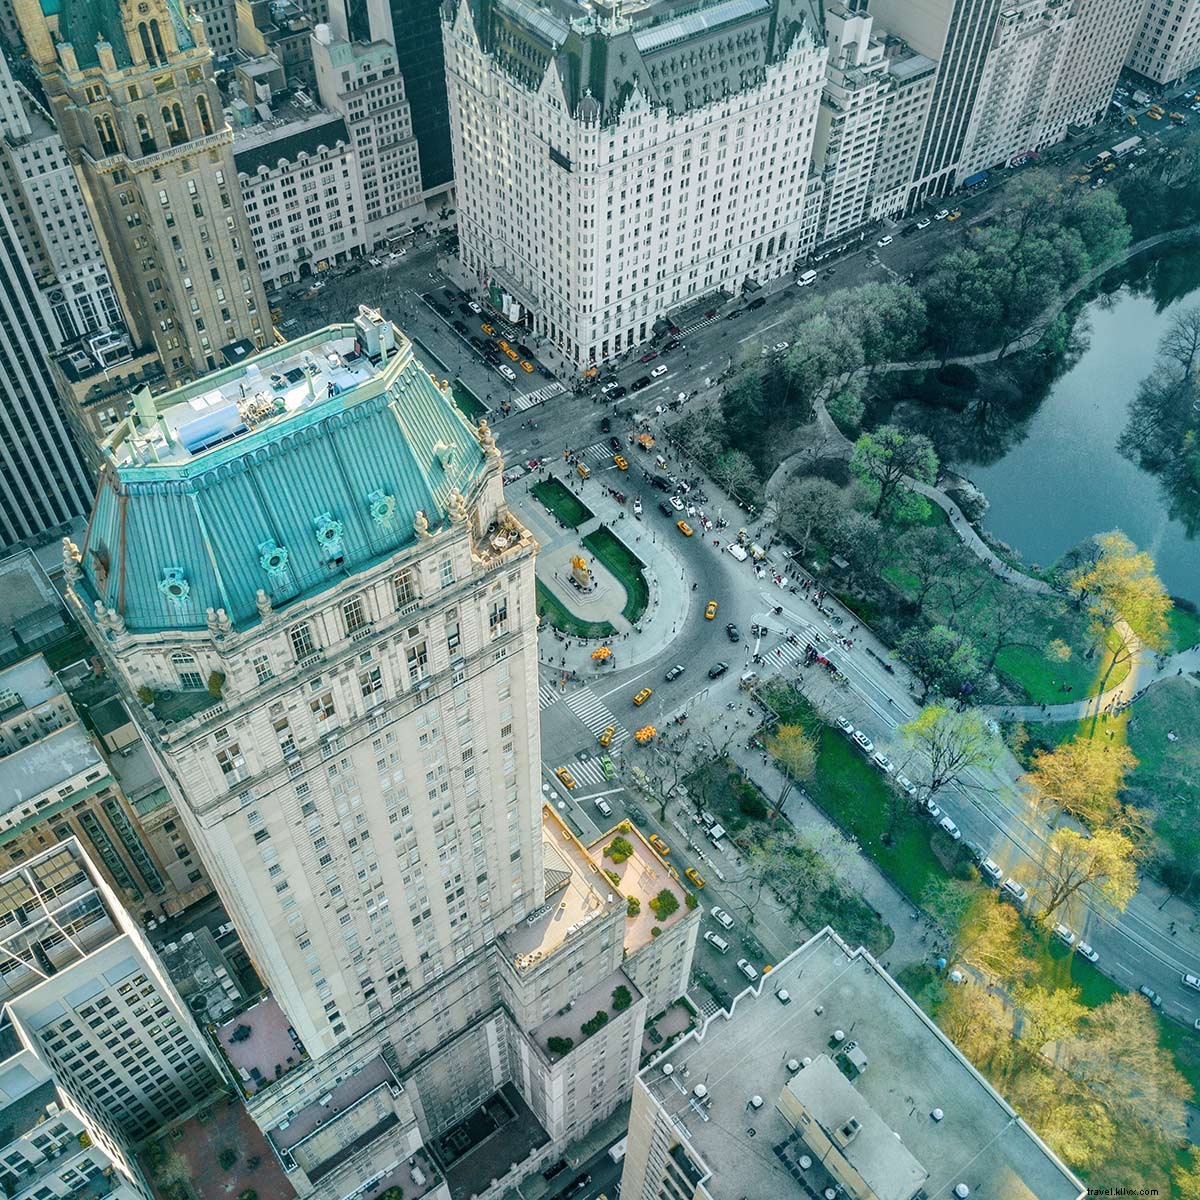 Soyez grand et opulent dans cet hôtel de Central Park du vieux monde 